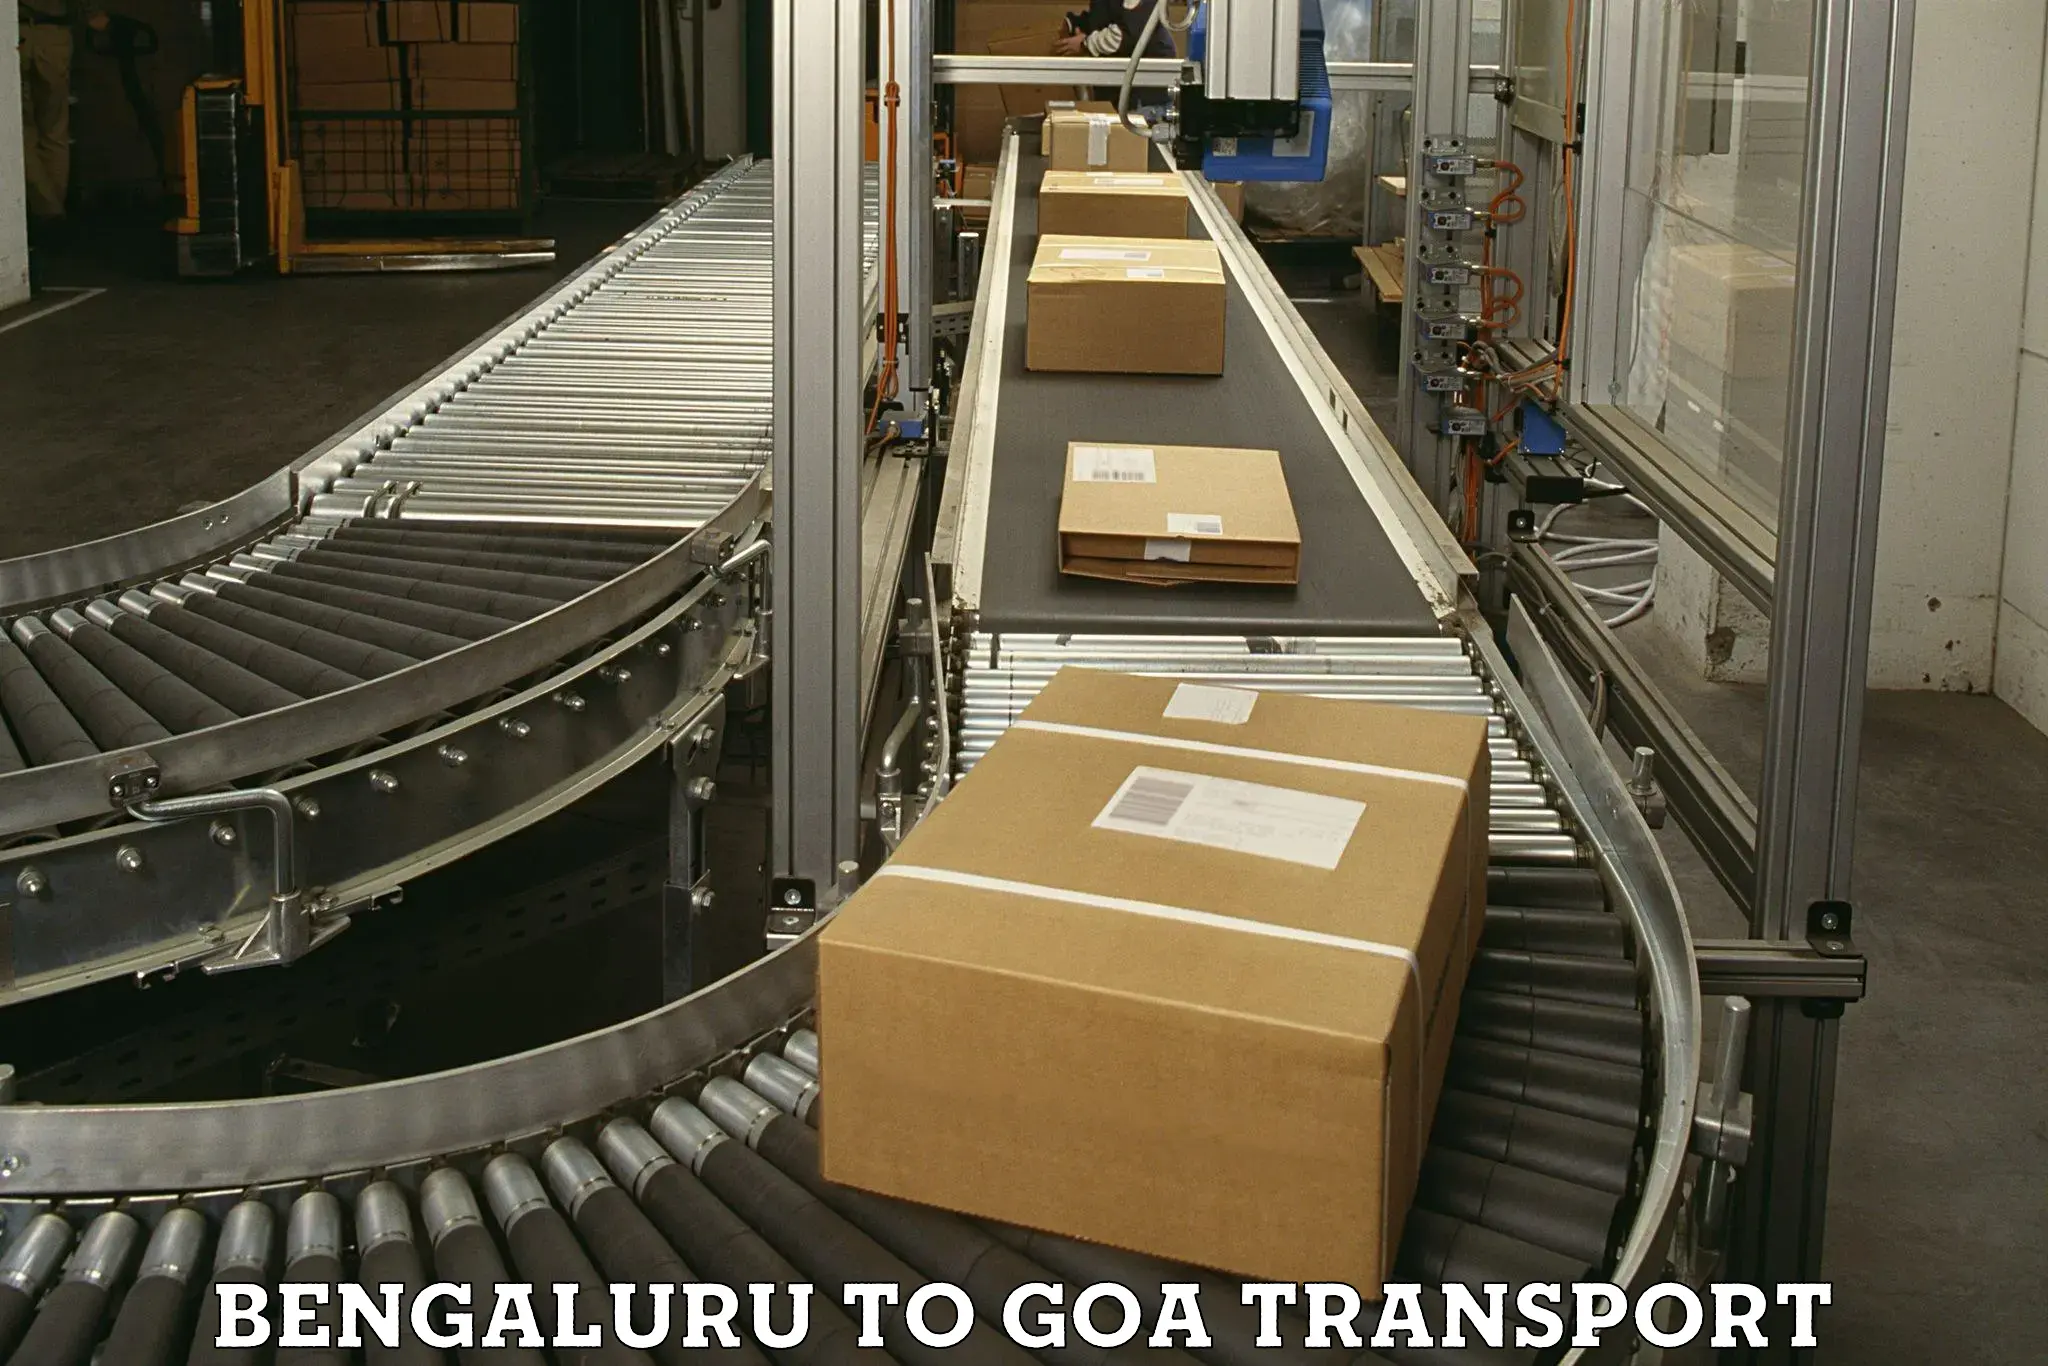 Bike transport service Bengaluru to Mormugao Port